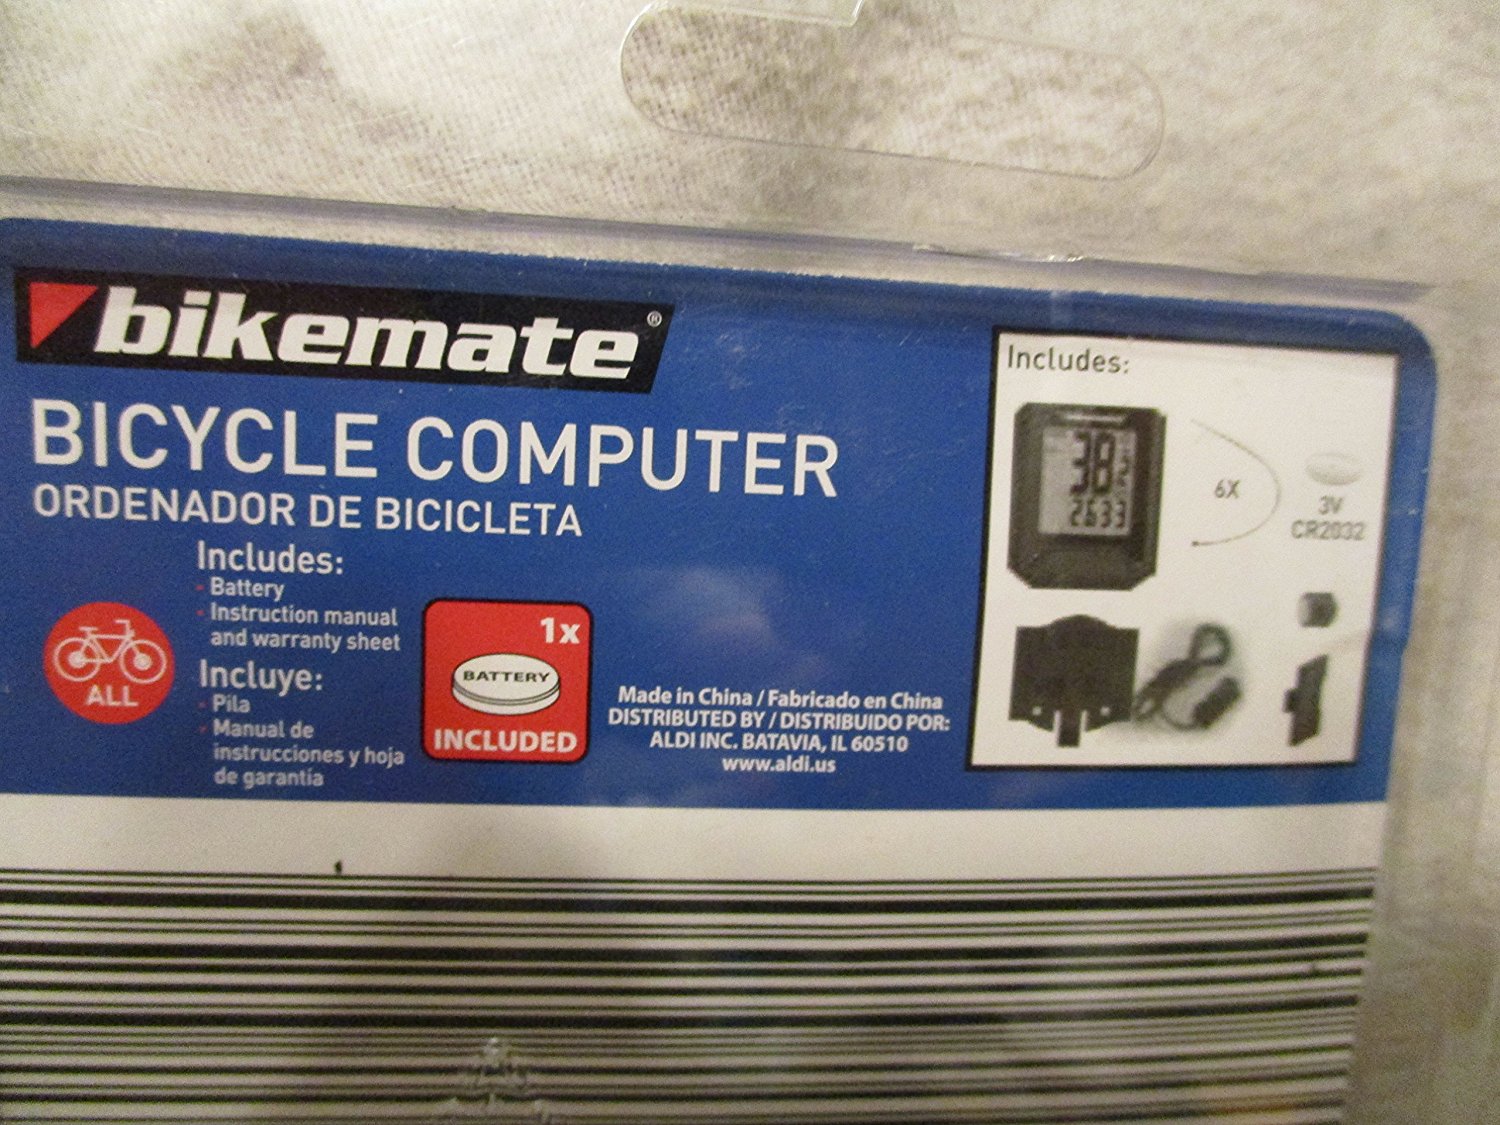 bikemate bike computer